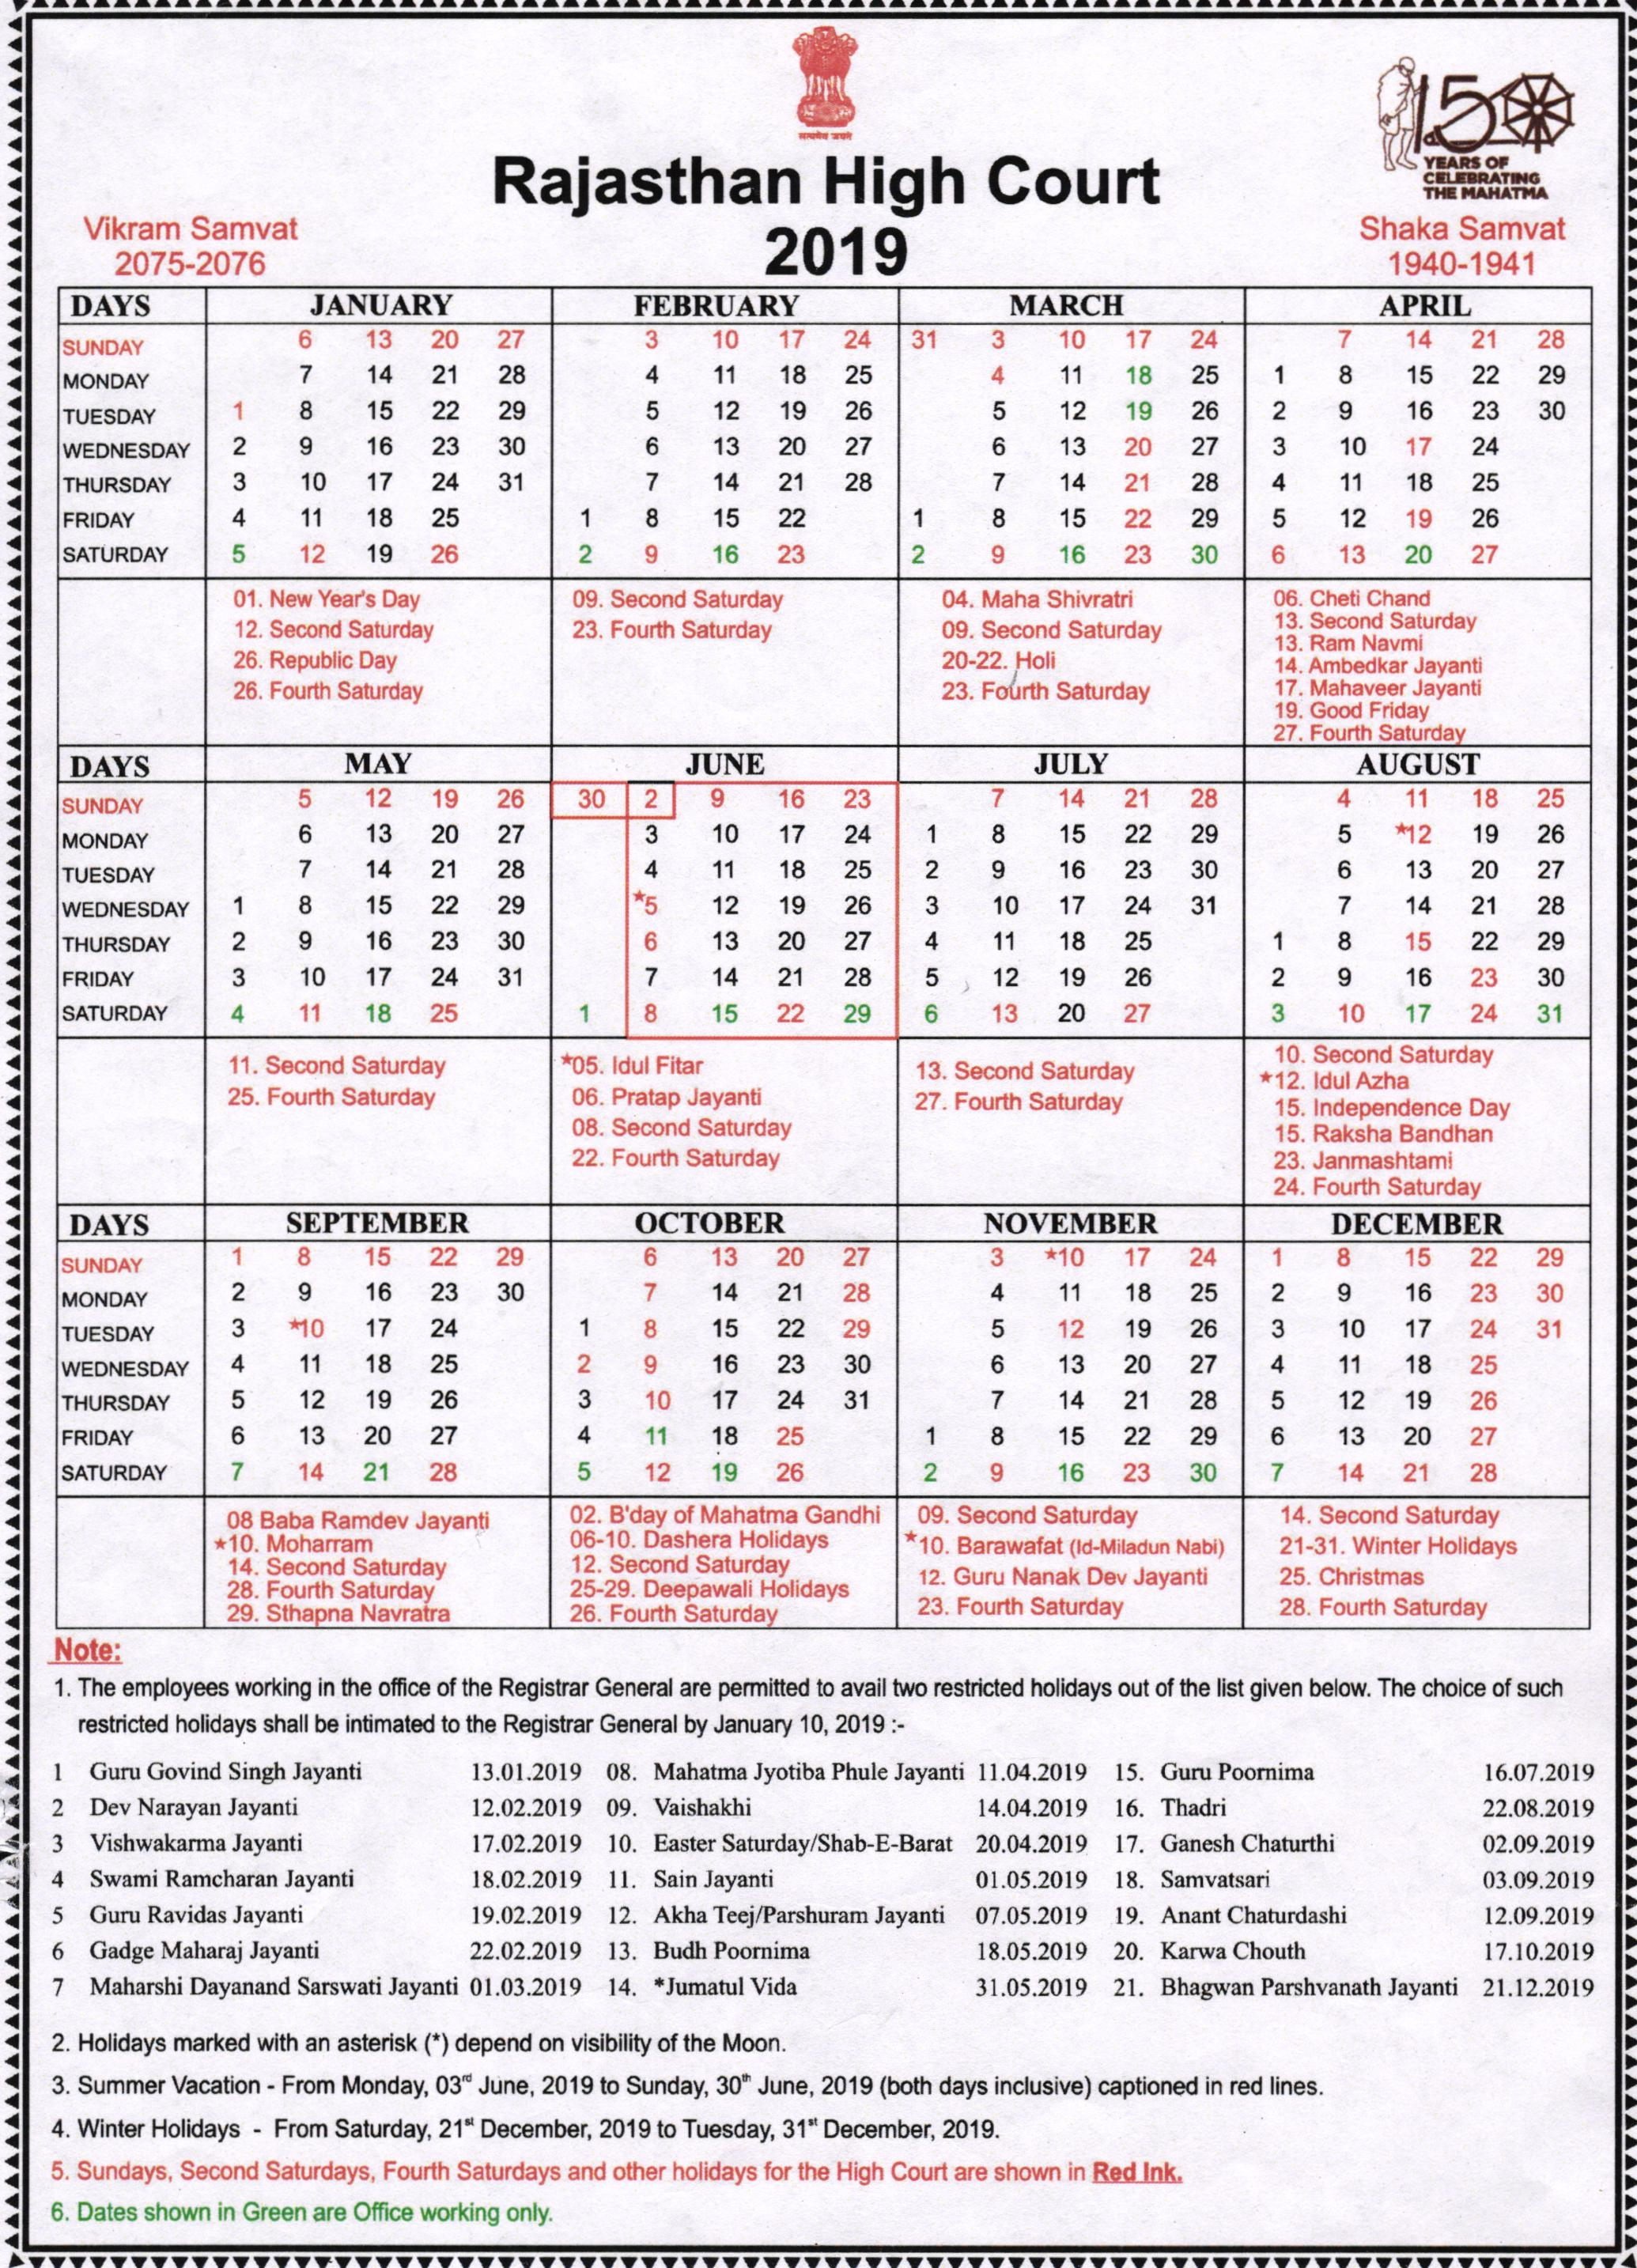 Rajasthan High Court Calendar 2019 throughout Kerala High Court Calendar